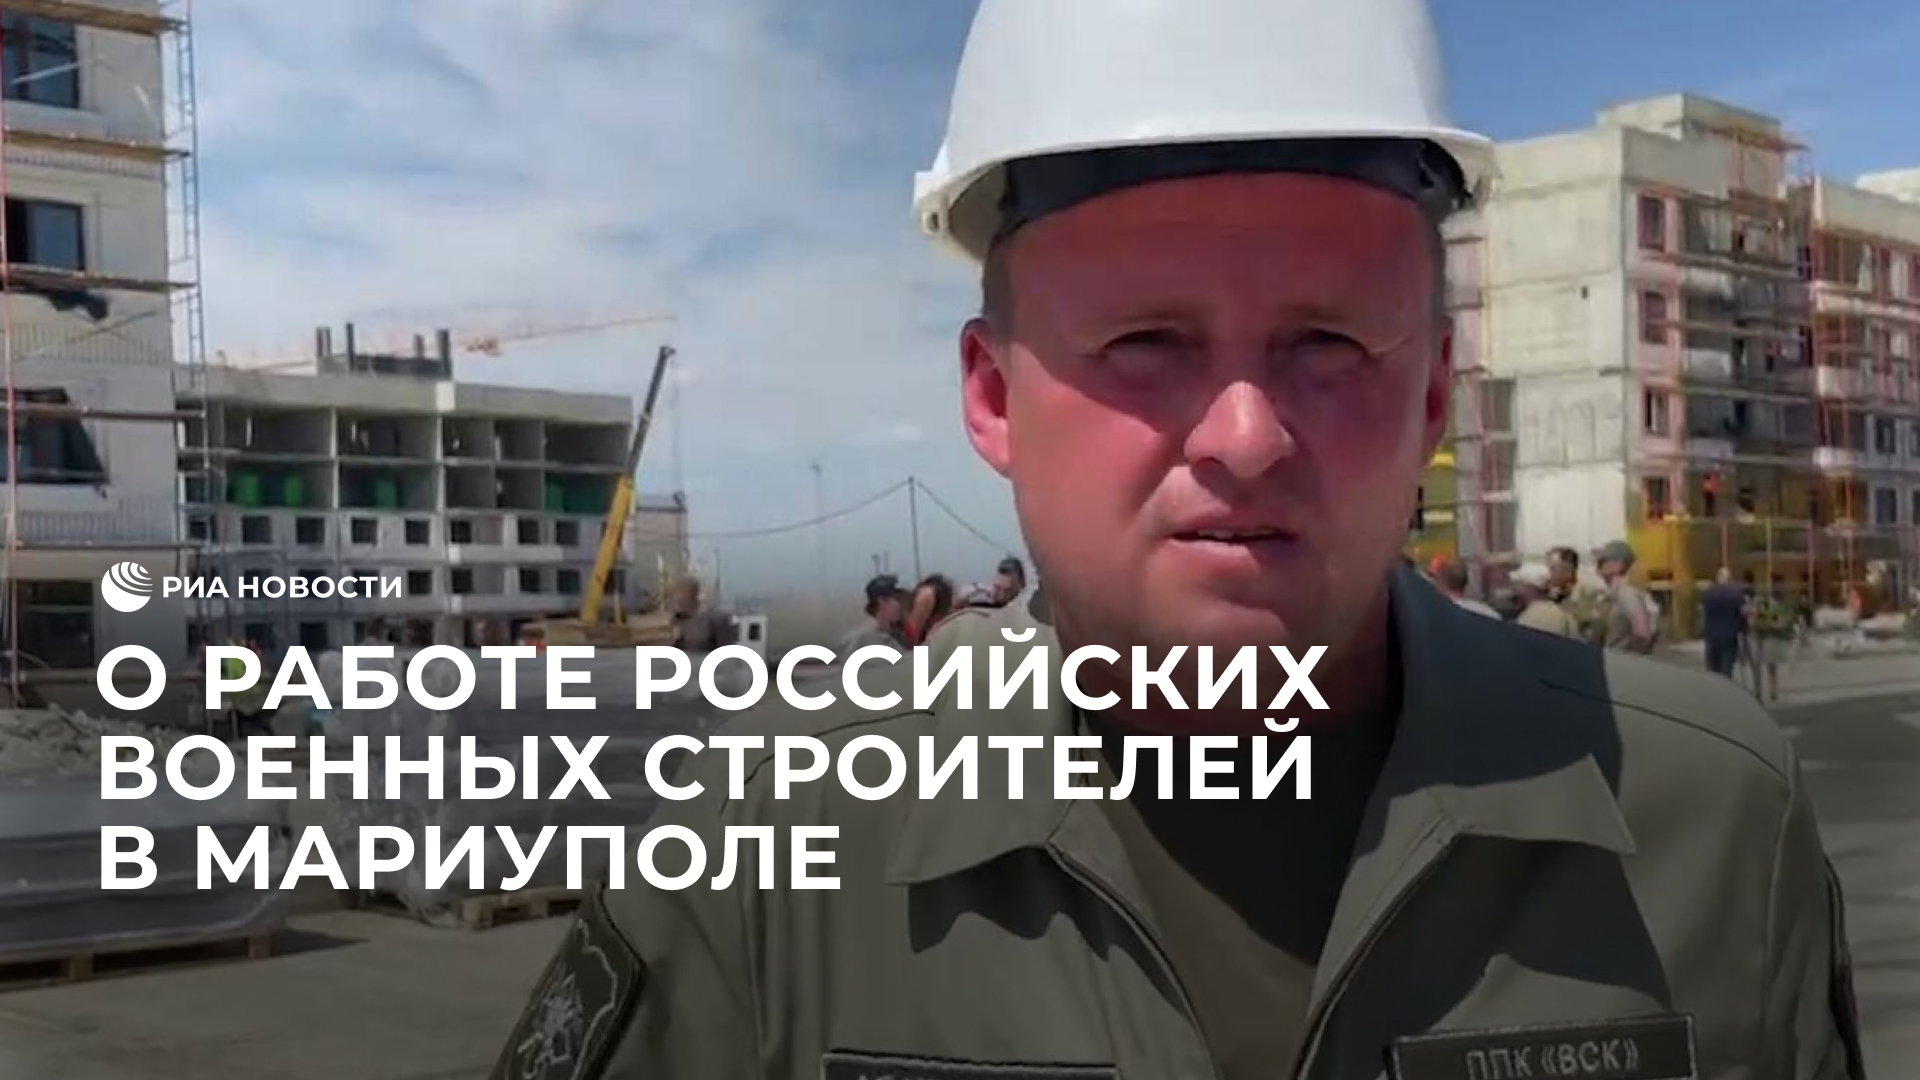 Представитель "Военно-строительной компании" о работе российских военных строителей в Мариуполе